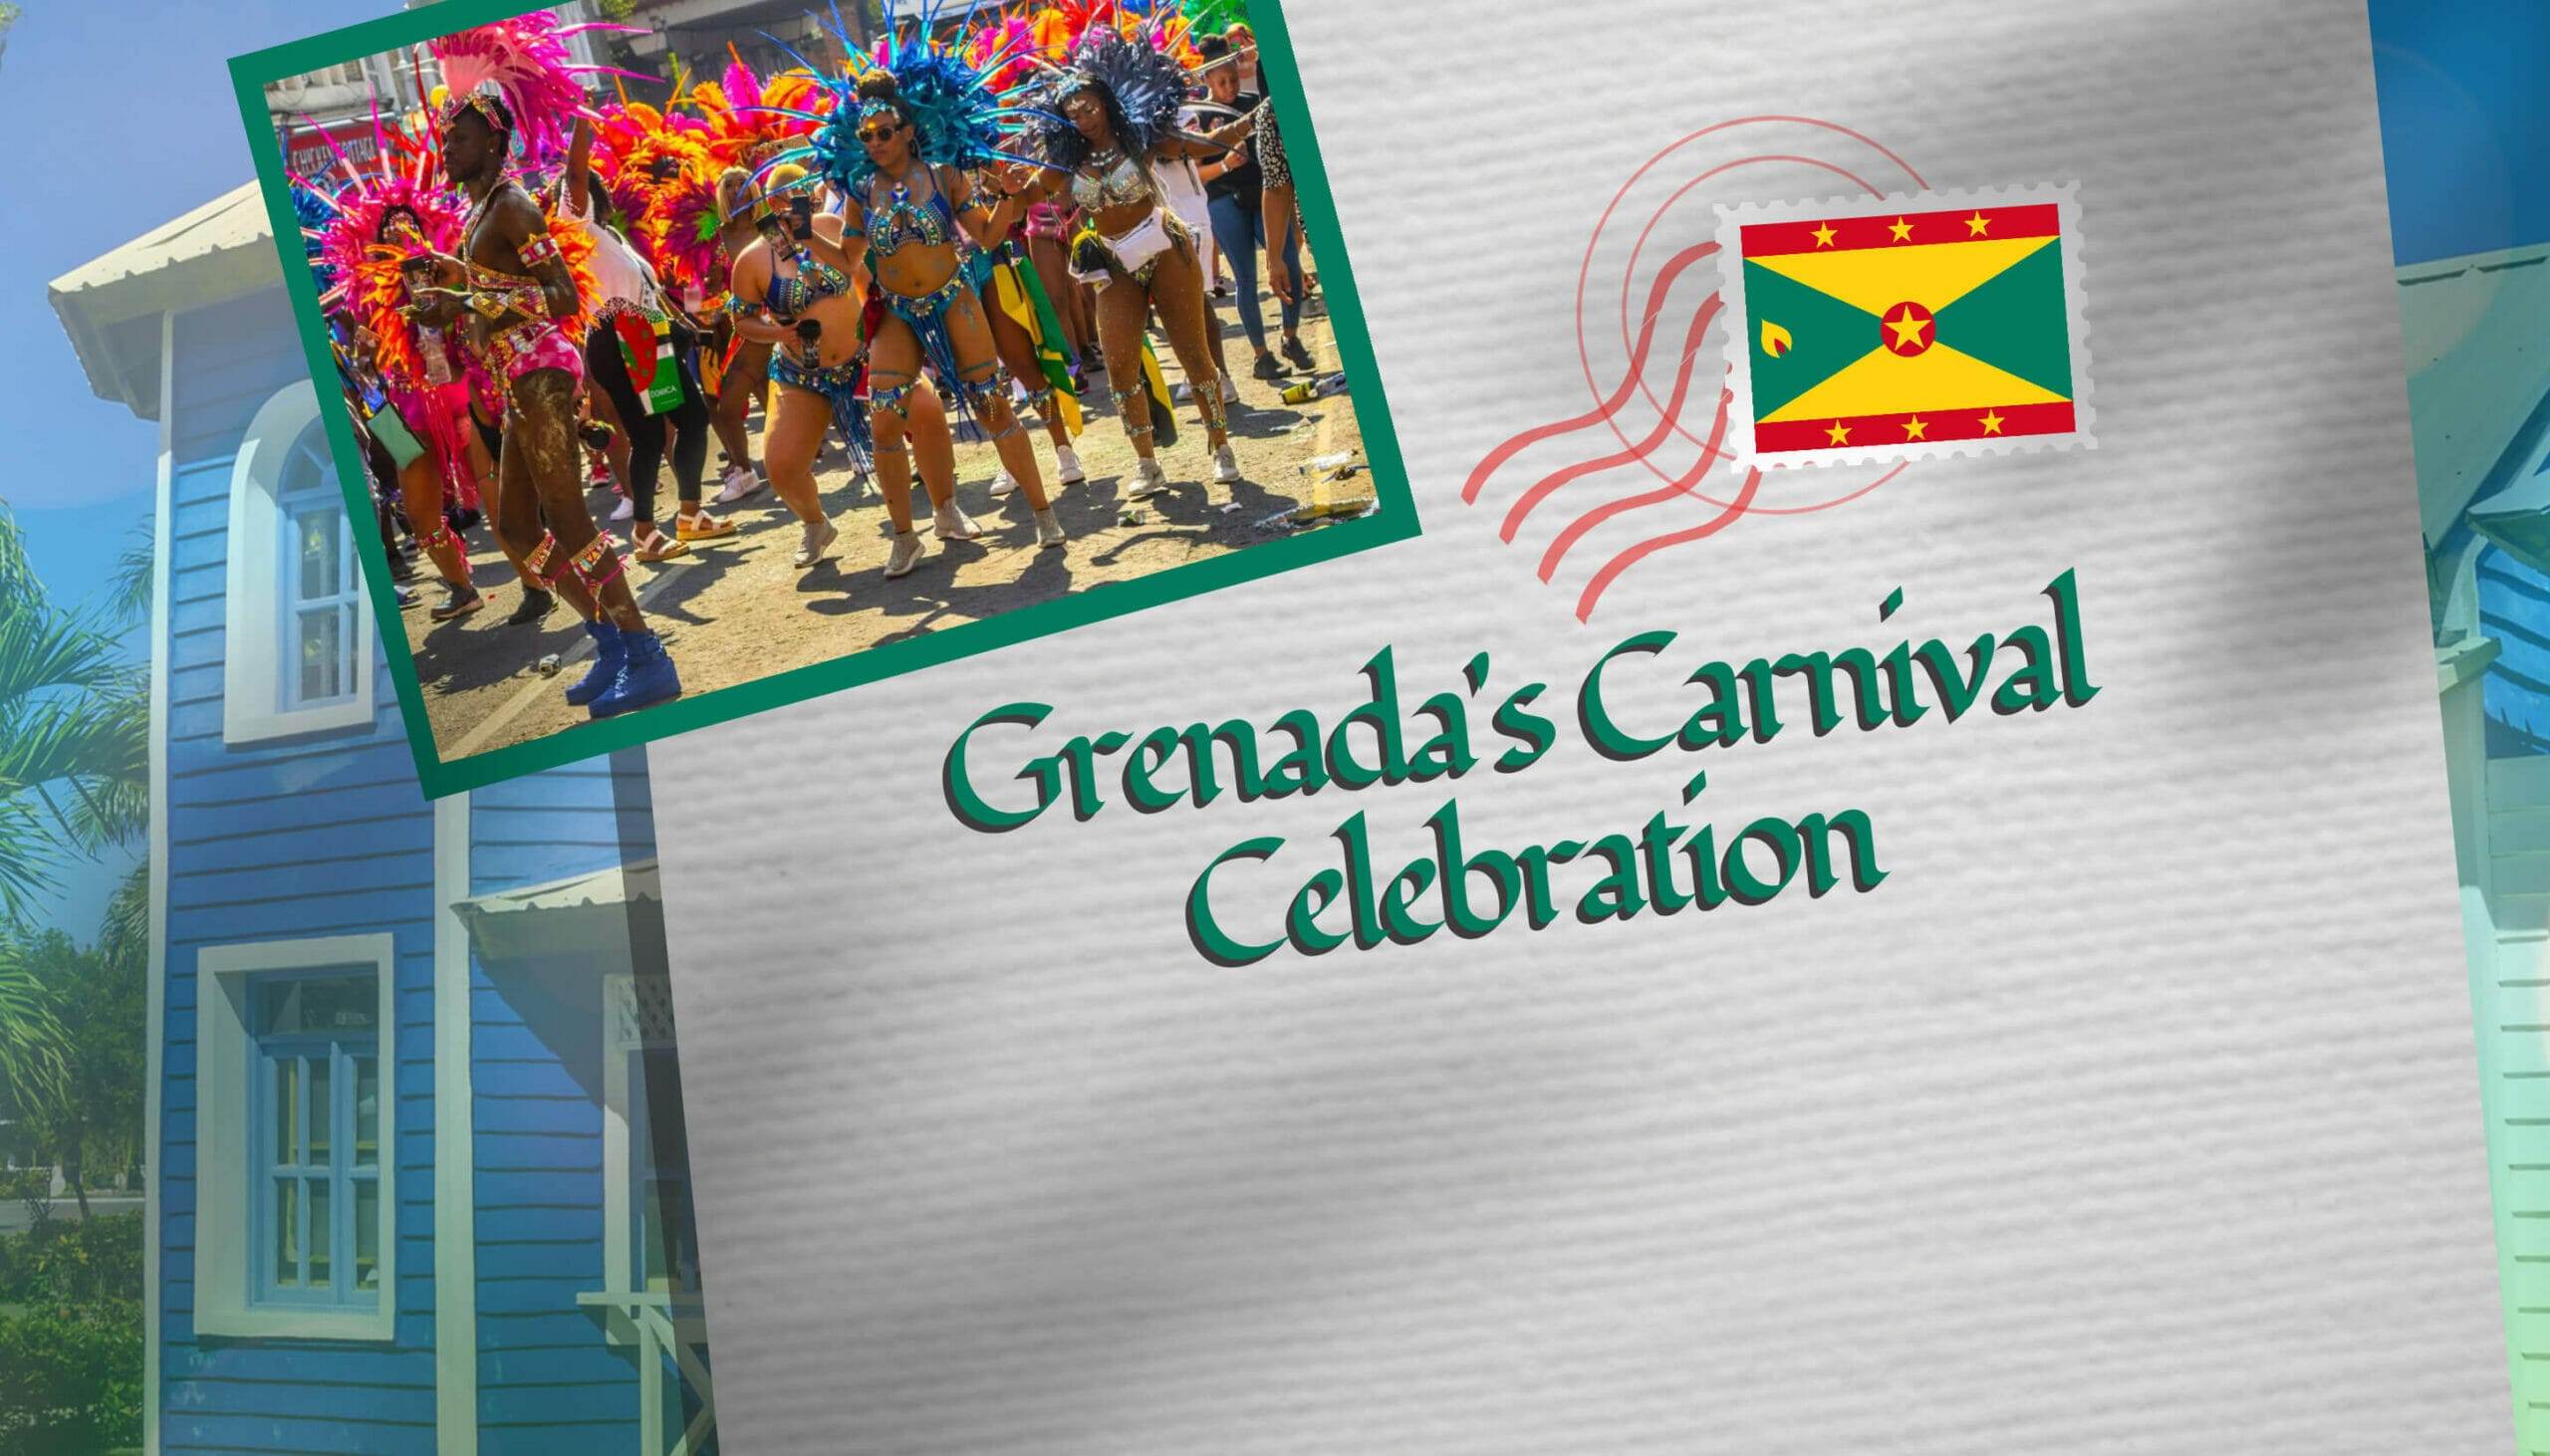 Grenada's Carnival Celebration